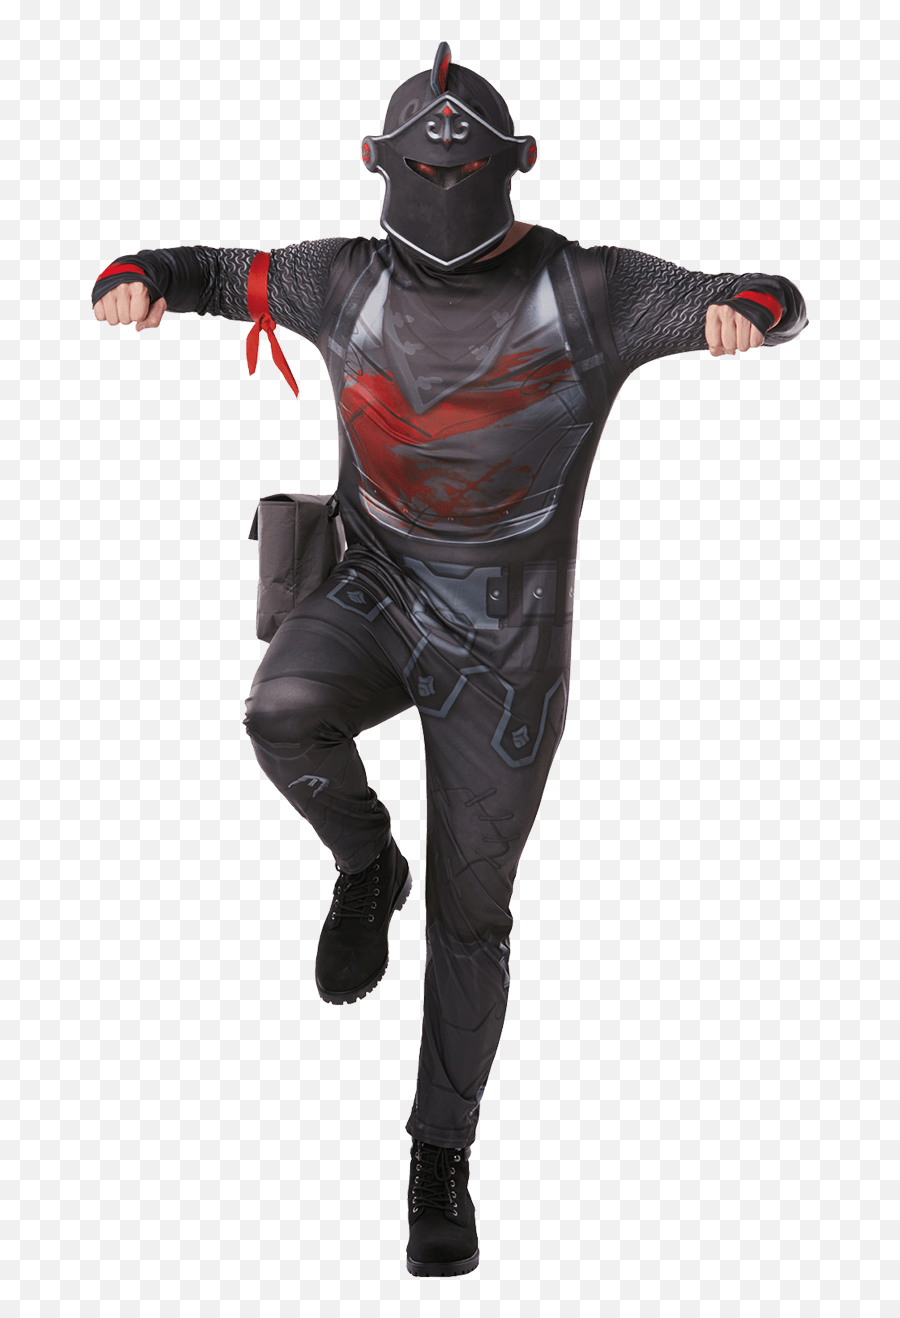 Kids Black Knight Fortnite Costume - Deluxe Fortnite Costumes For Kids Png,Black Knight Fortnite Png